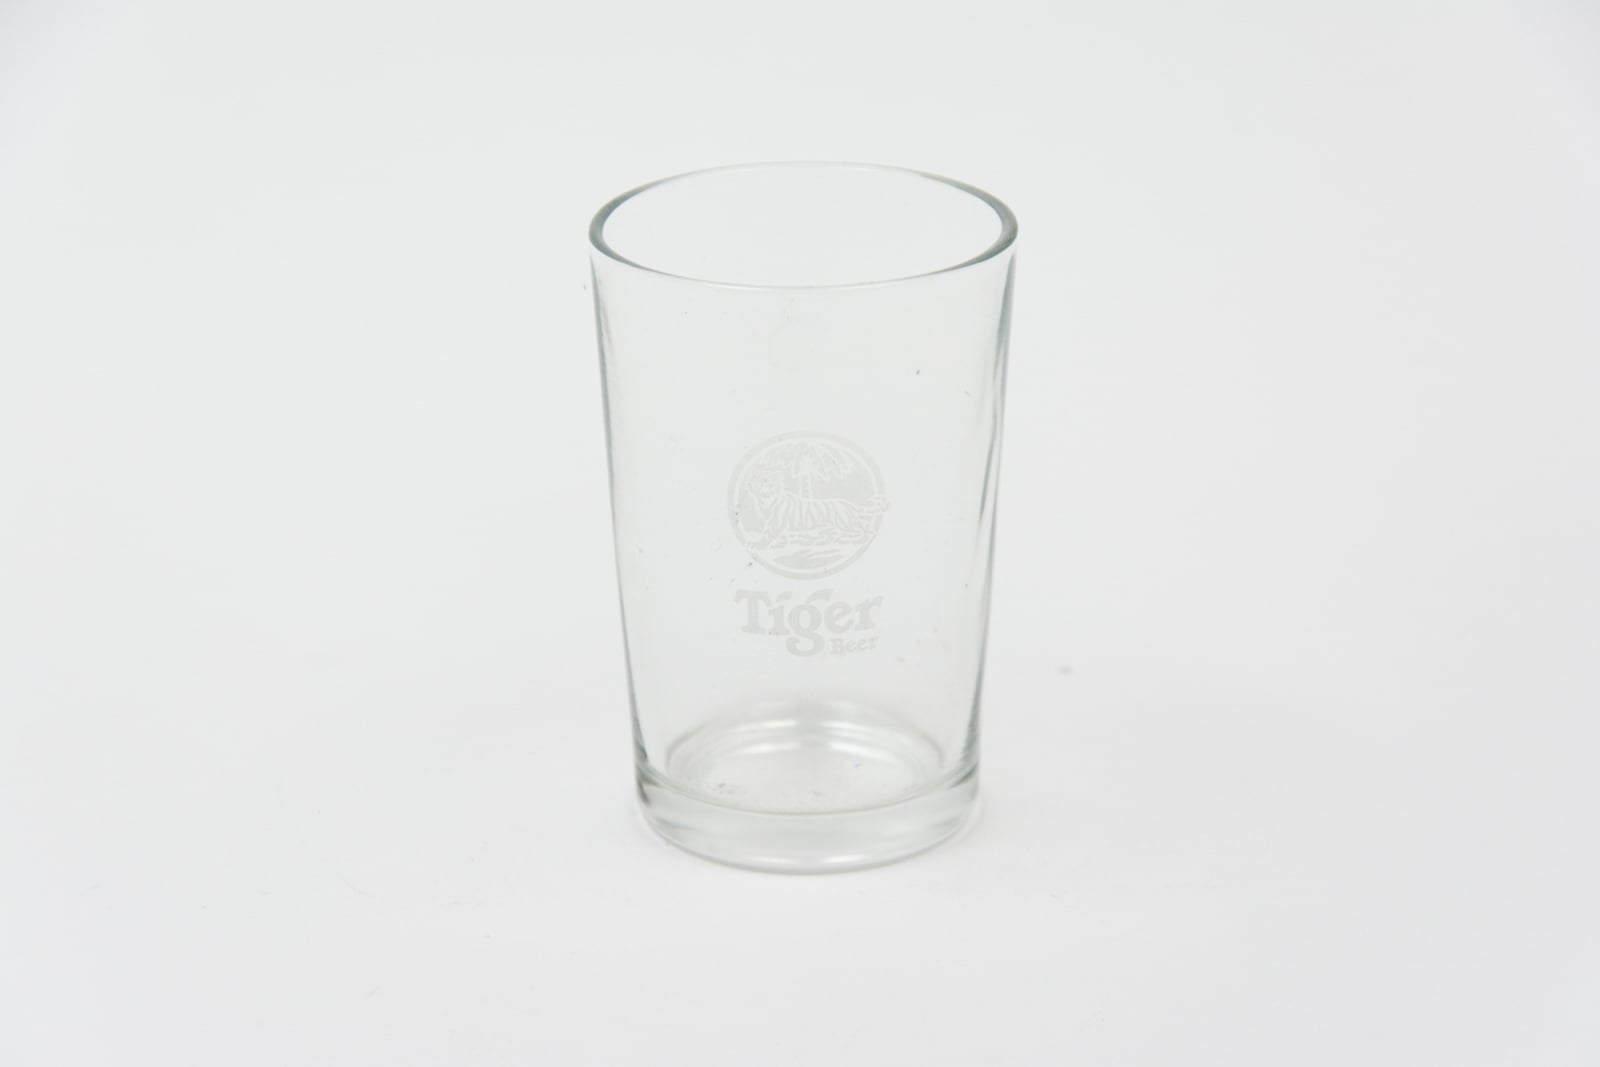 Tiger Beer Sampler Glassware